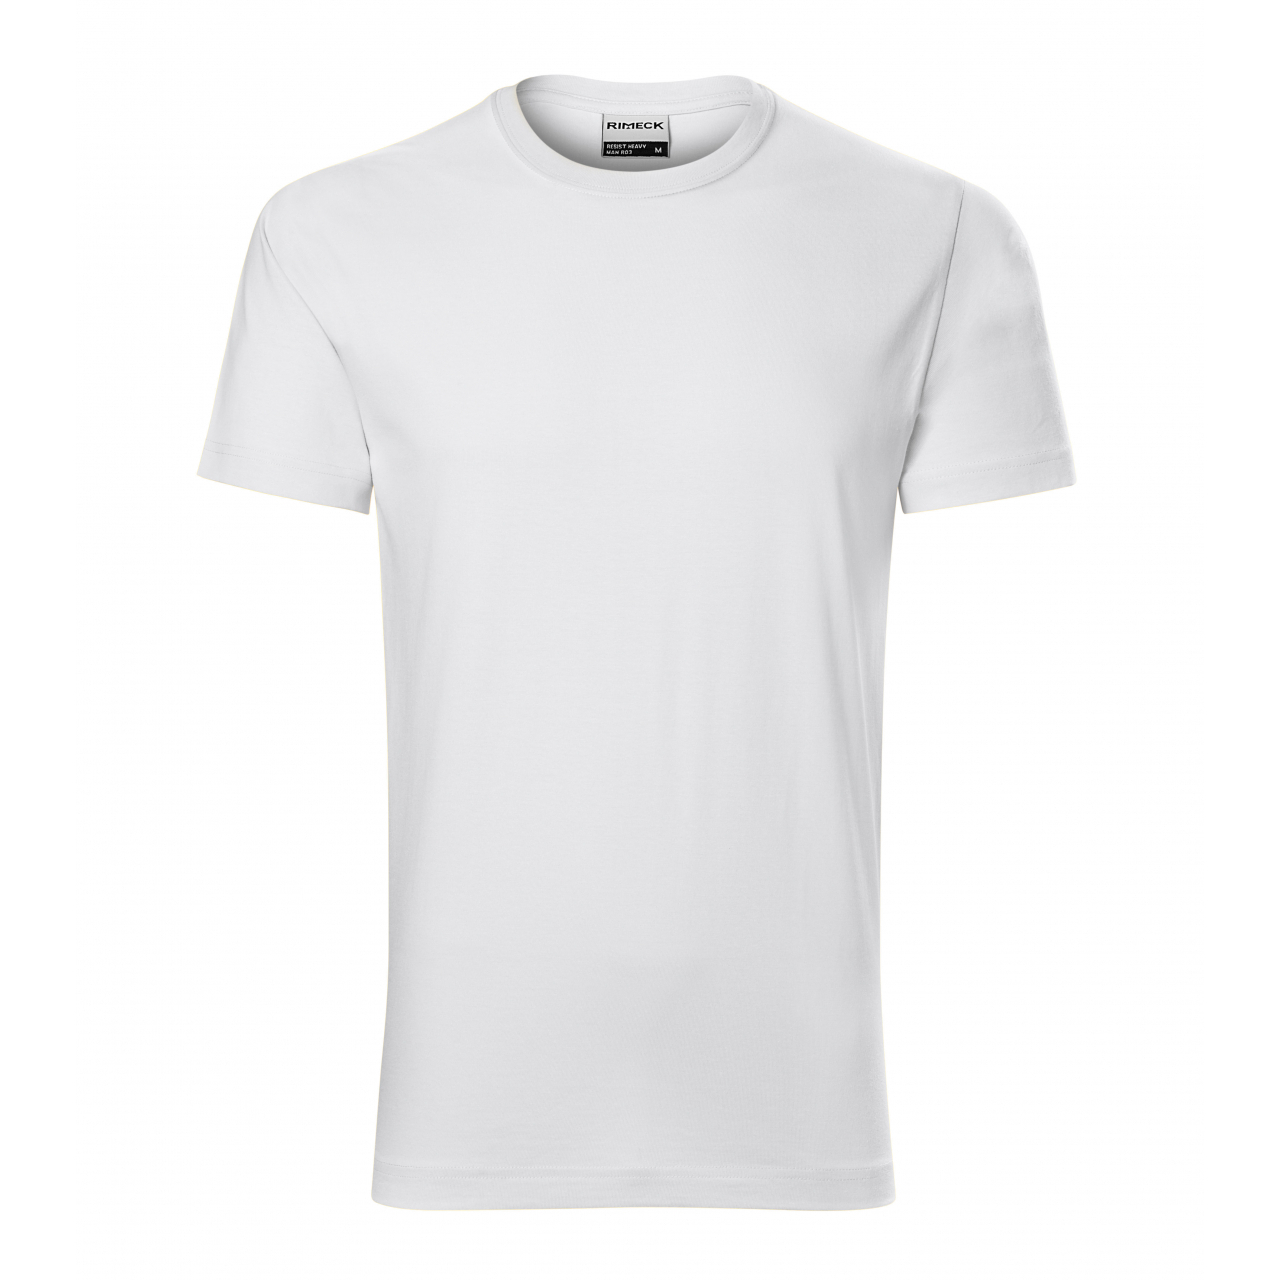 Tričko pánské Rimeck Resist - bílé, XL